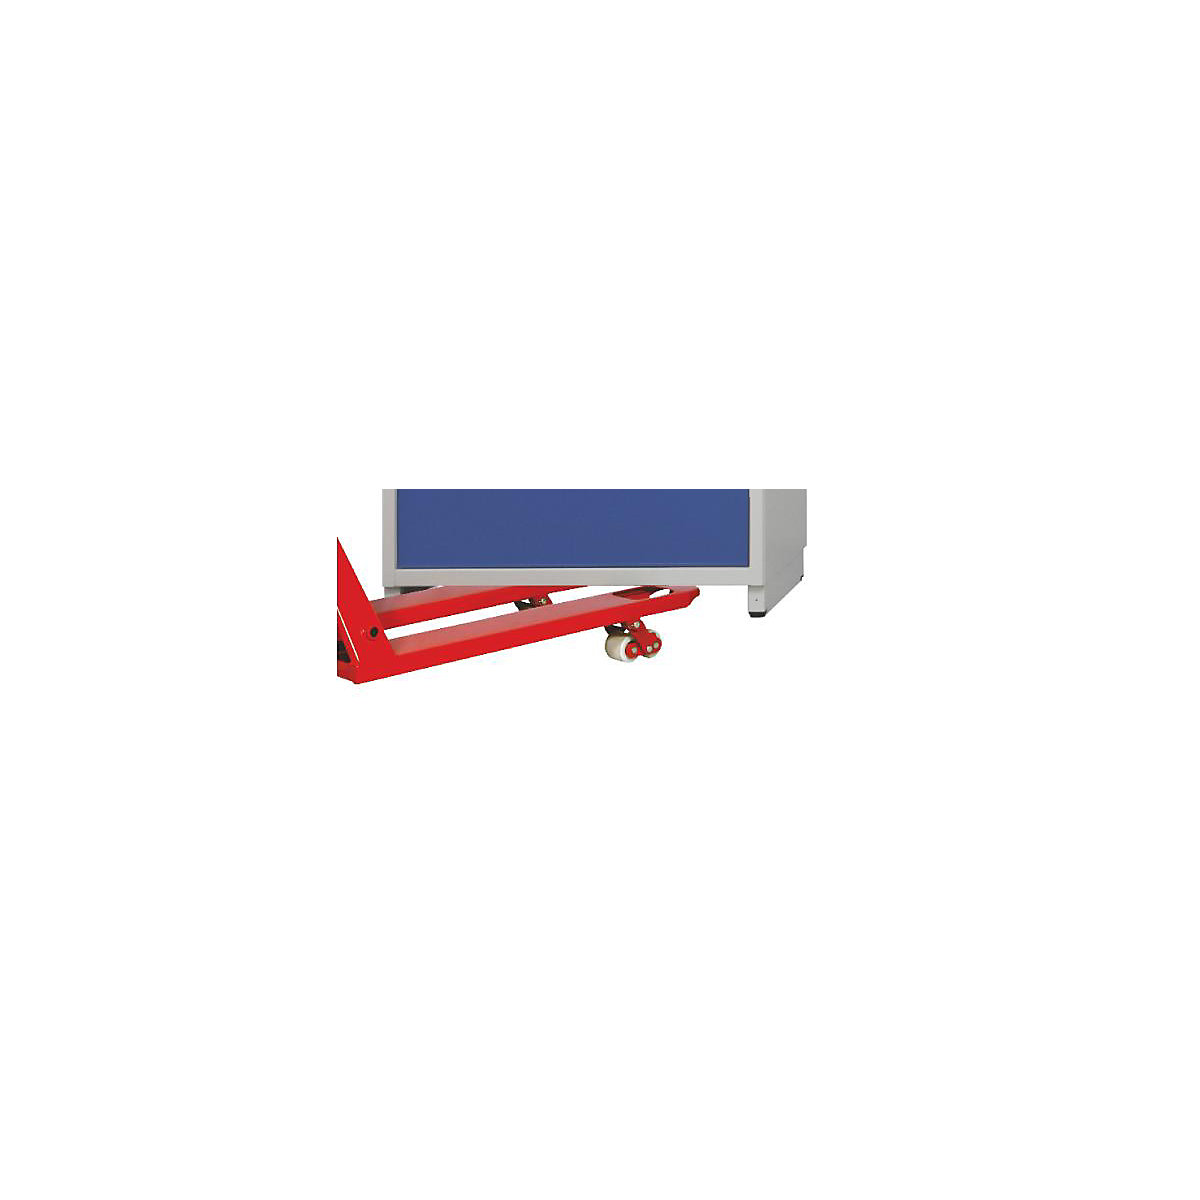 ANKE Staplersockel, für Schubladenschrank-BxT 760 x 675 mm, Breite 760 mm